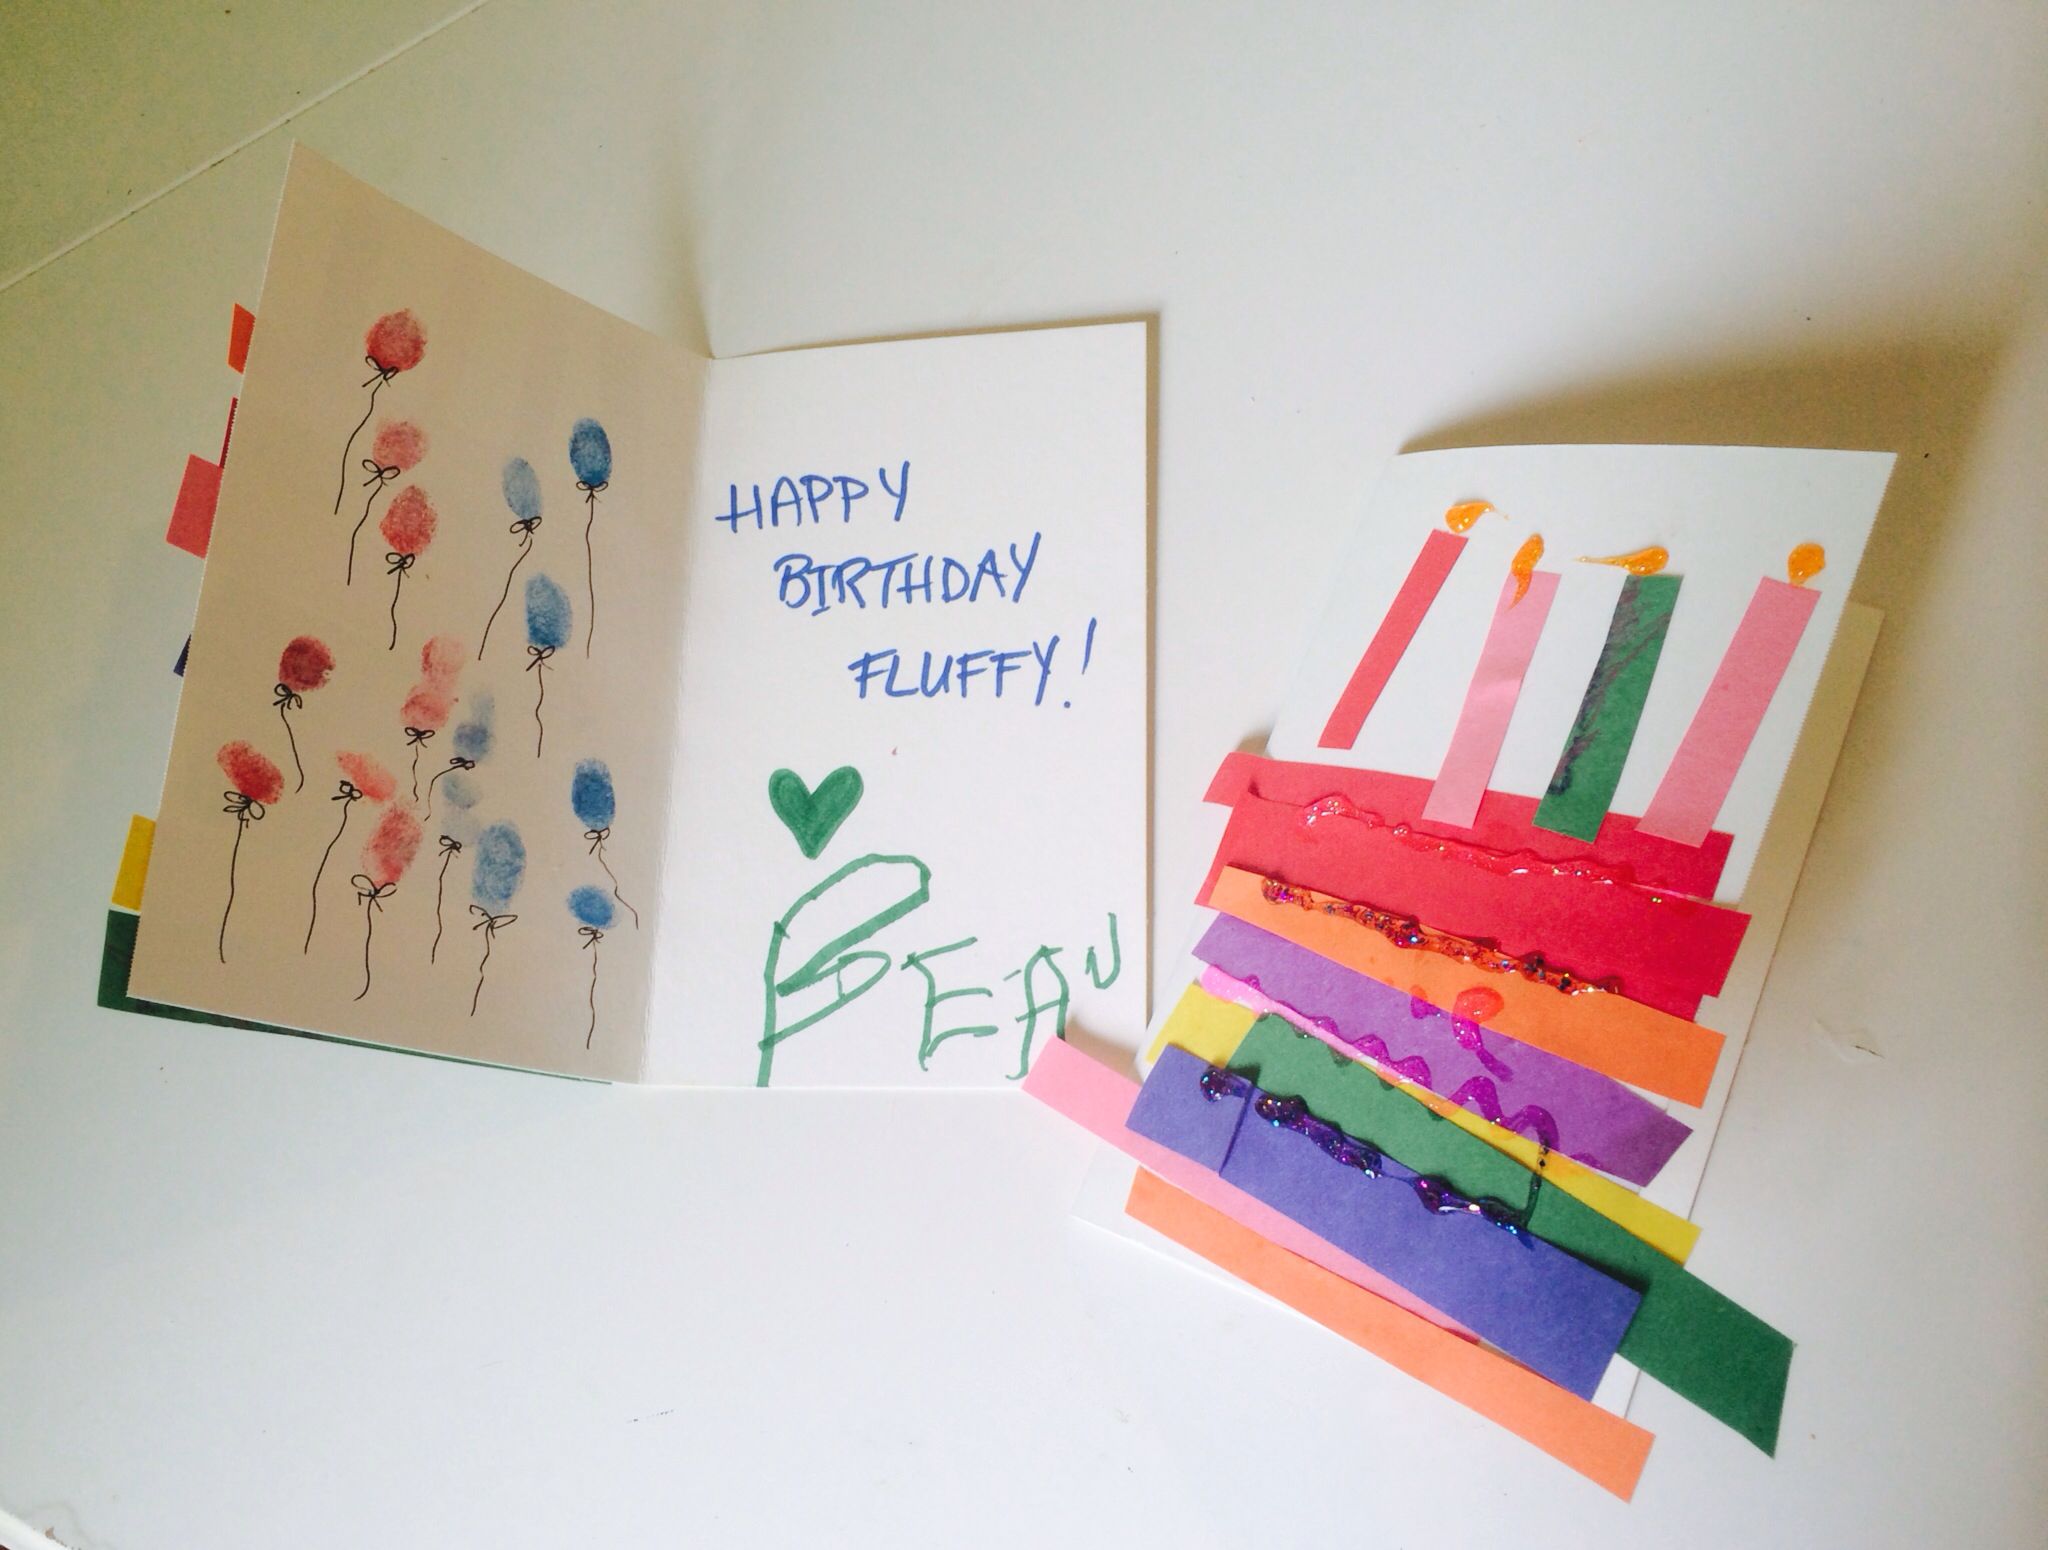 Открытки своими руками на день рождения из картона и бумаги: 10 открыток с Днем рождения, которые ребенок может сделать своими руками